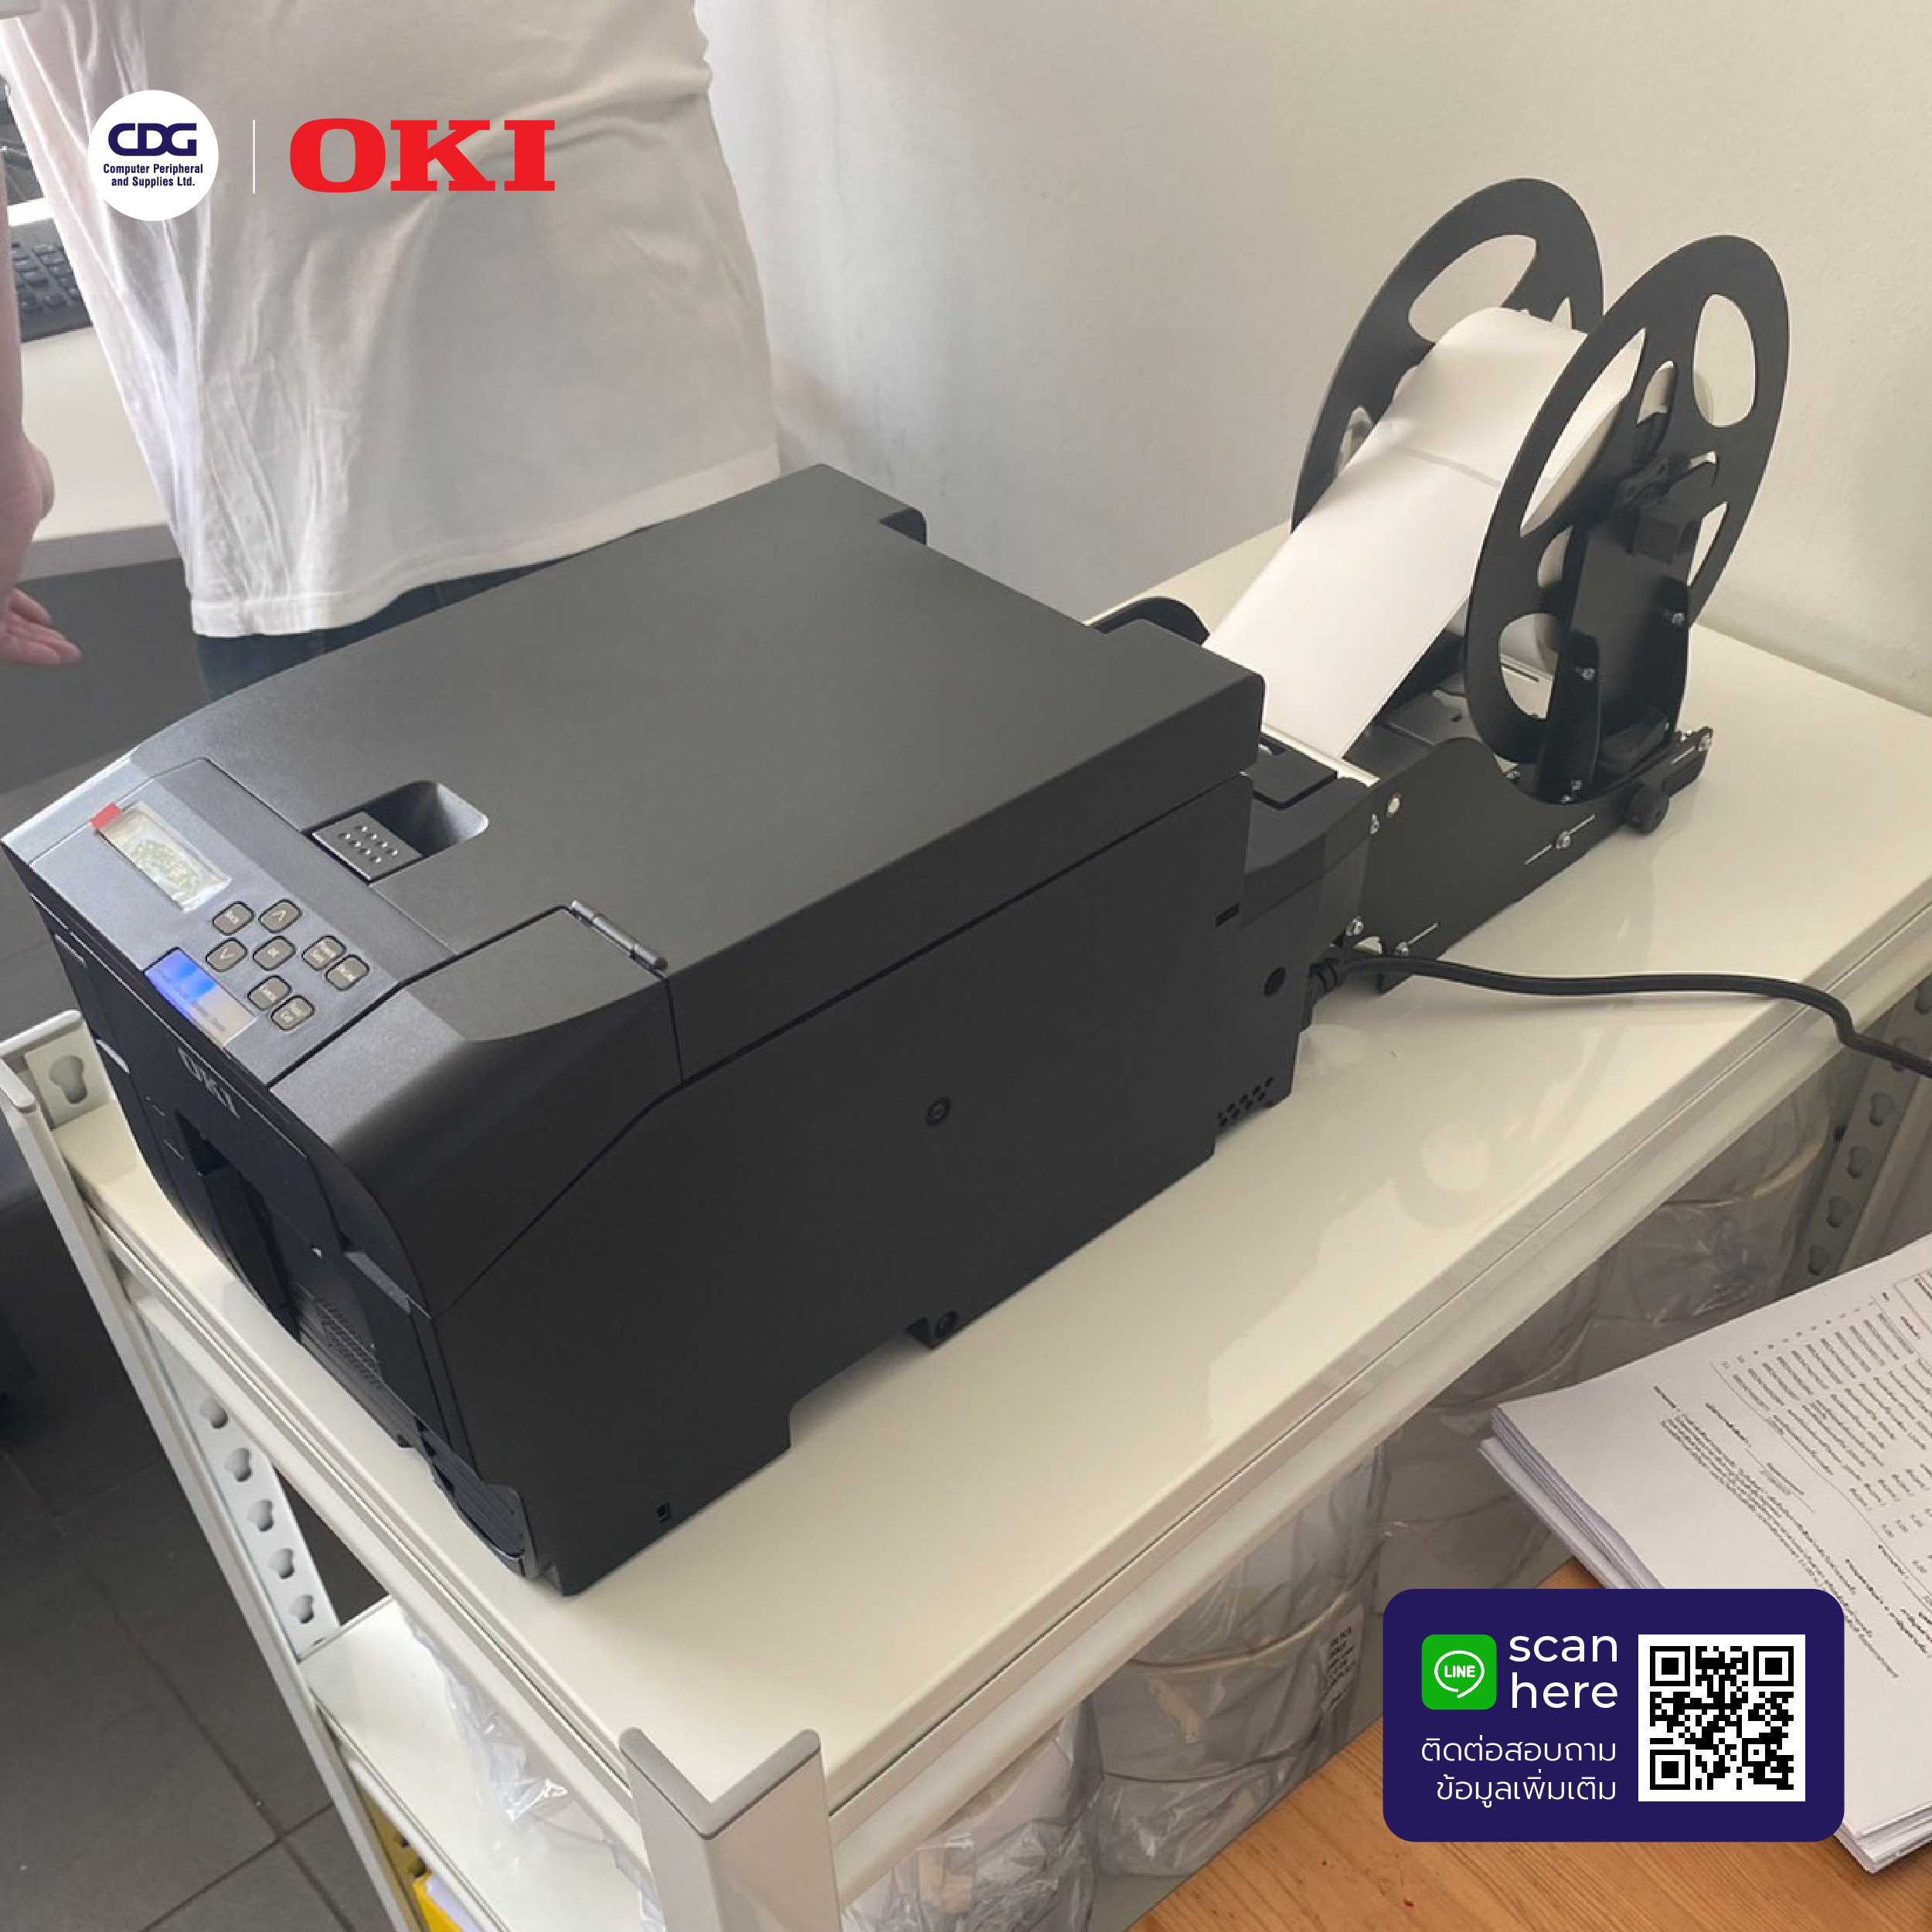 เครื่องพิมพ์ฉลากสี OKI รุ่น Pro 330S